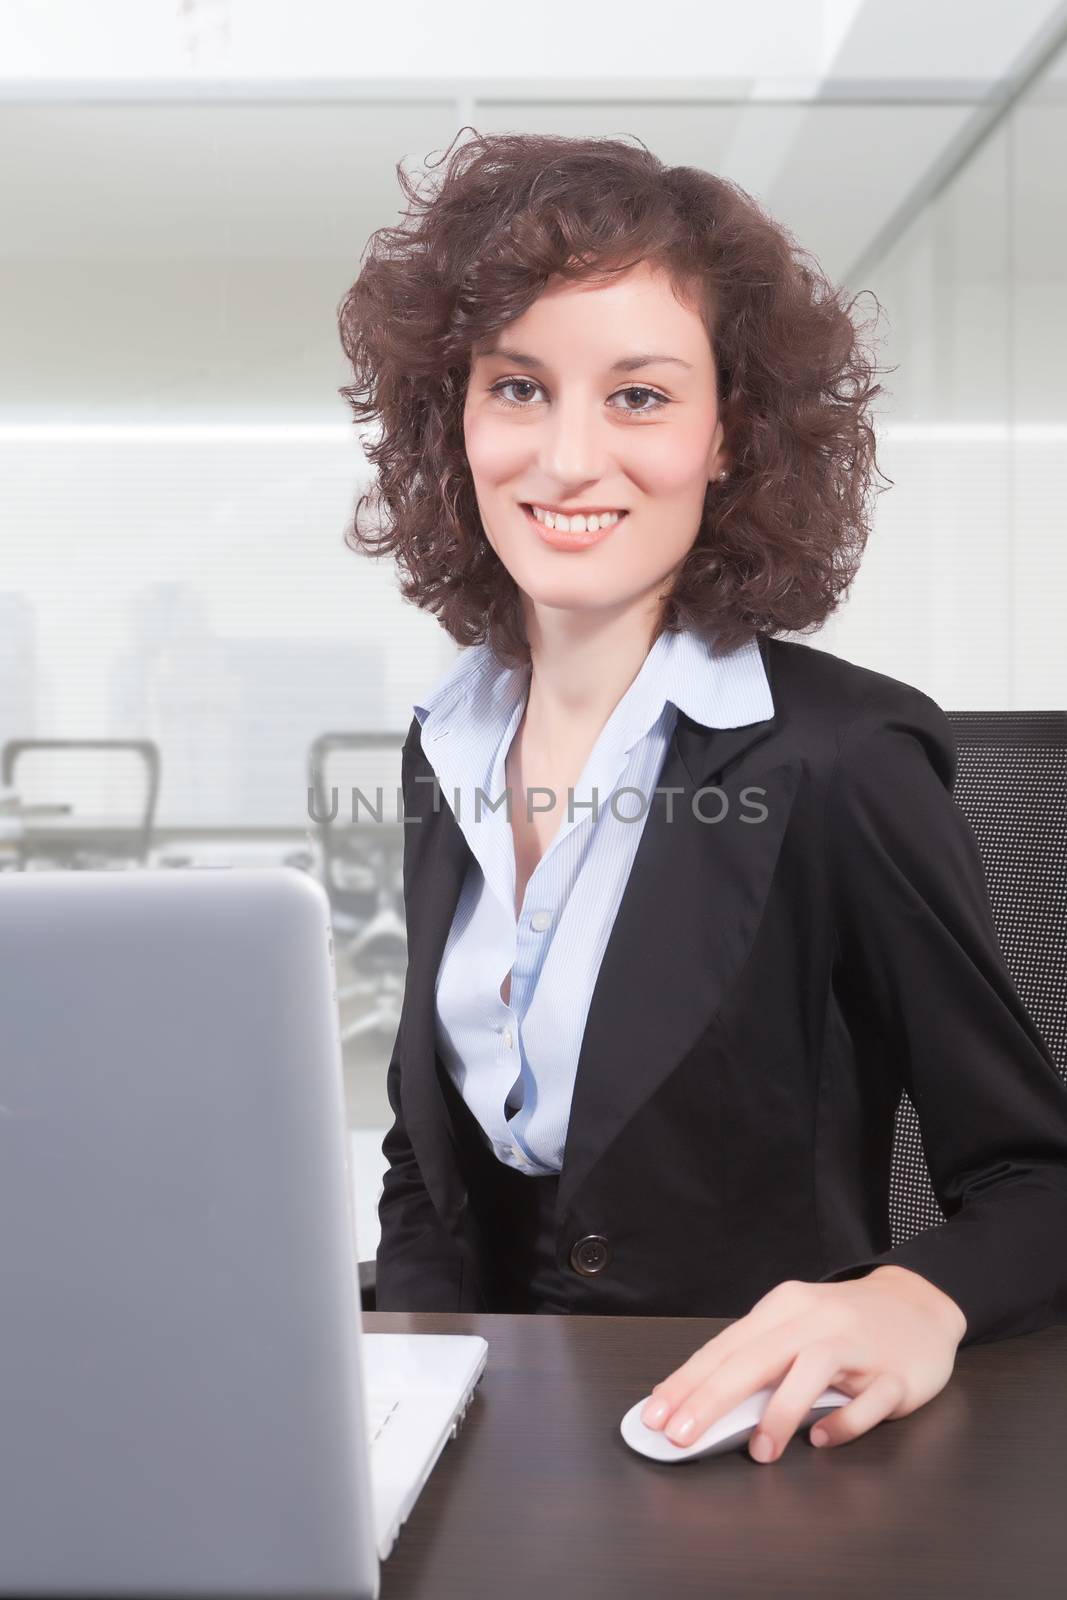 female professional by matteobragaglio